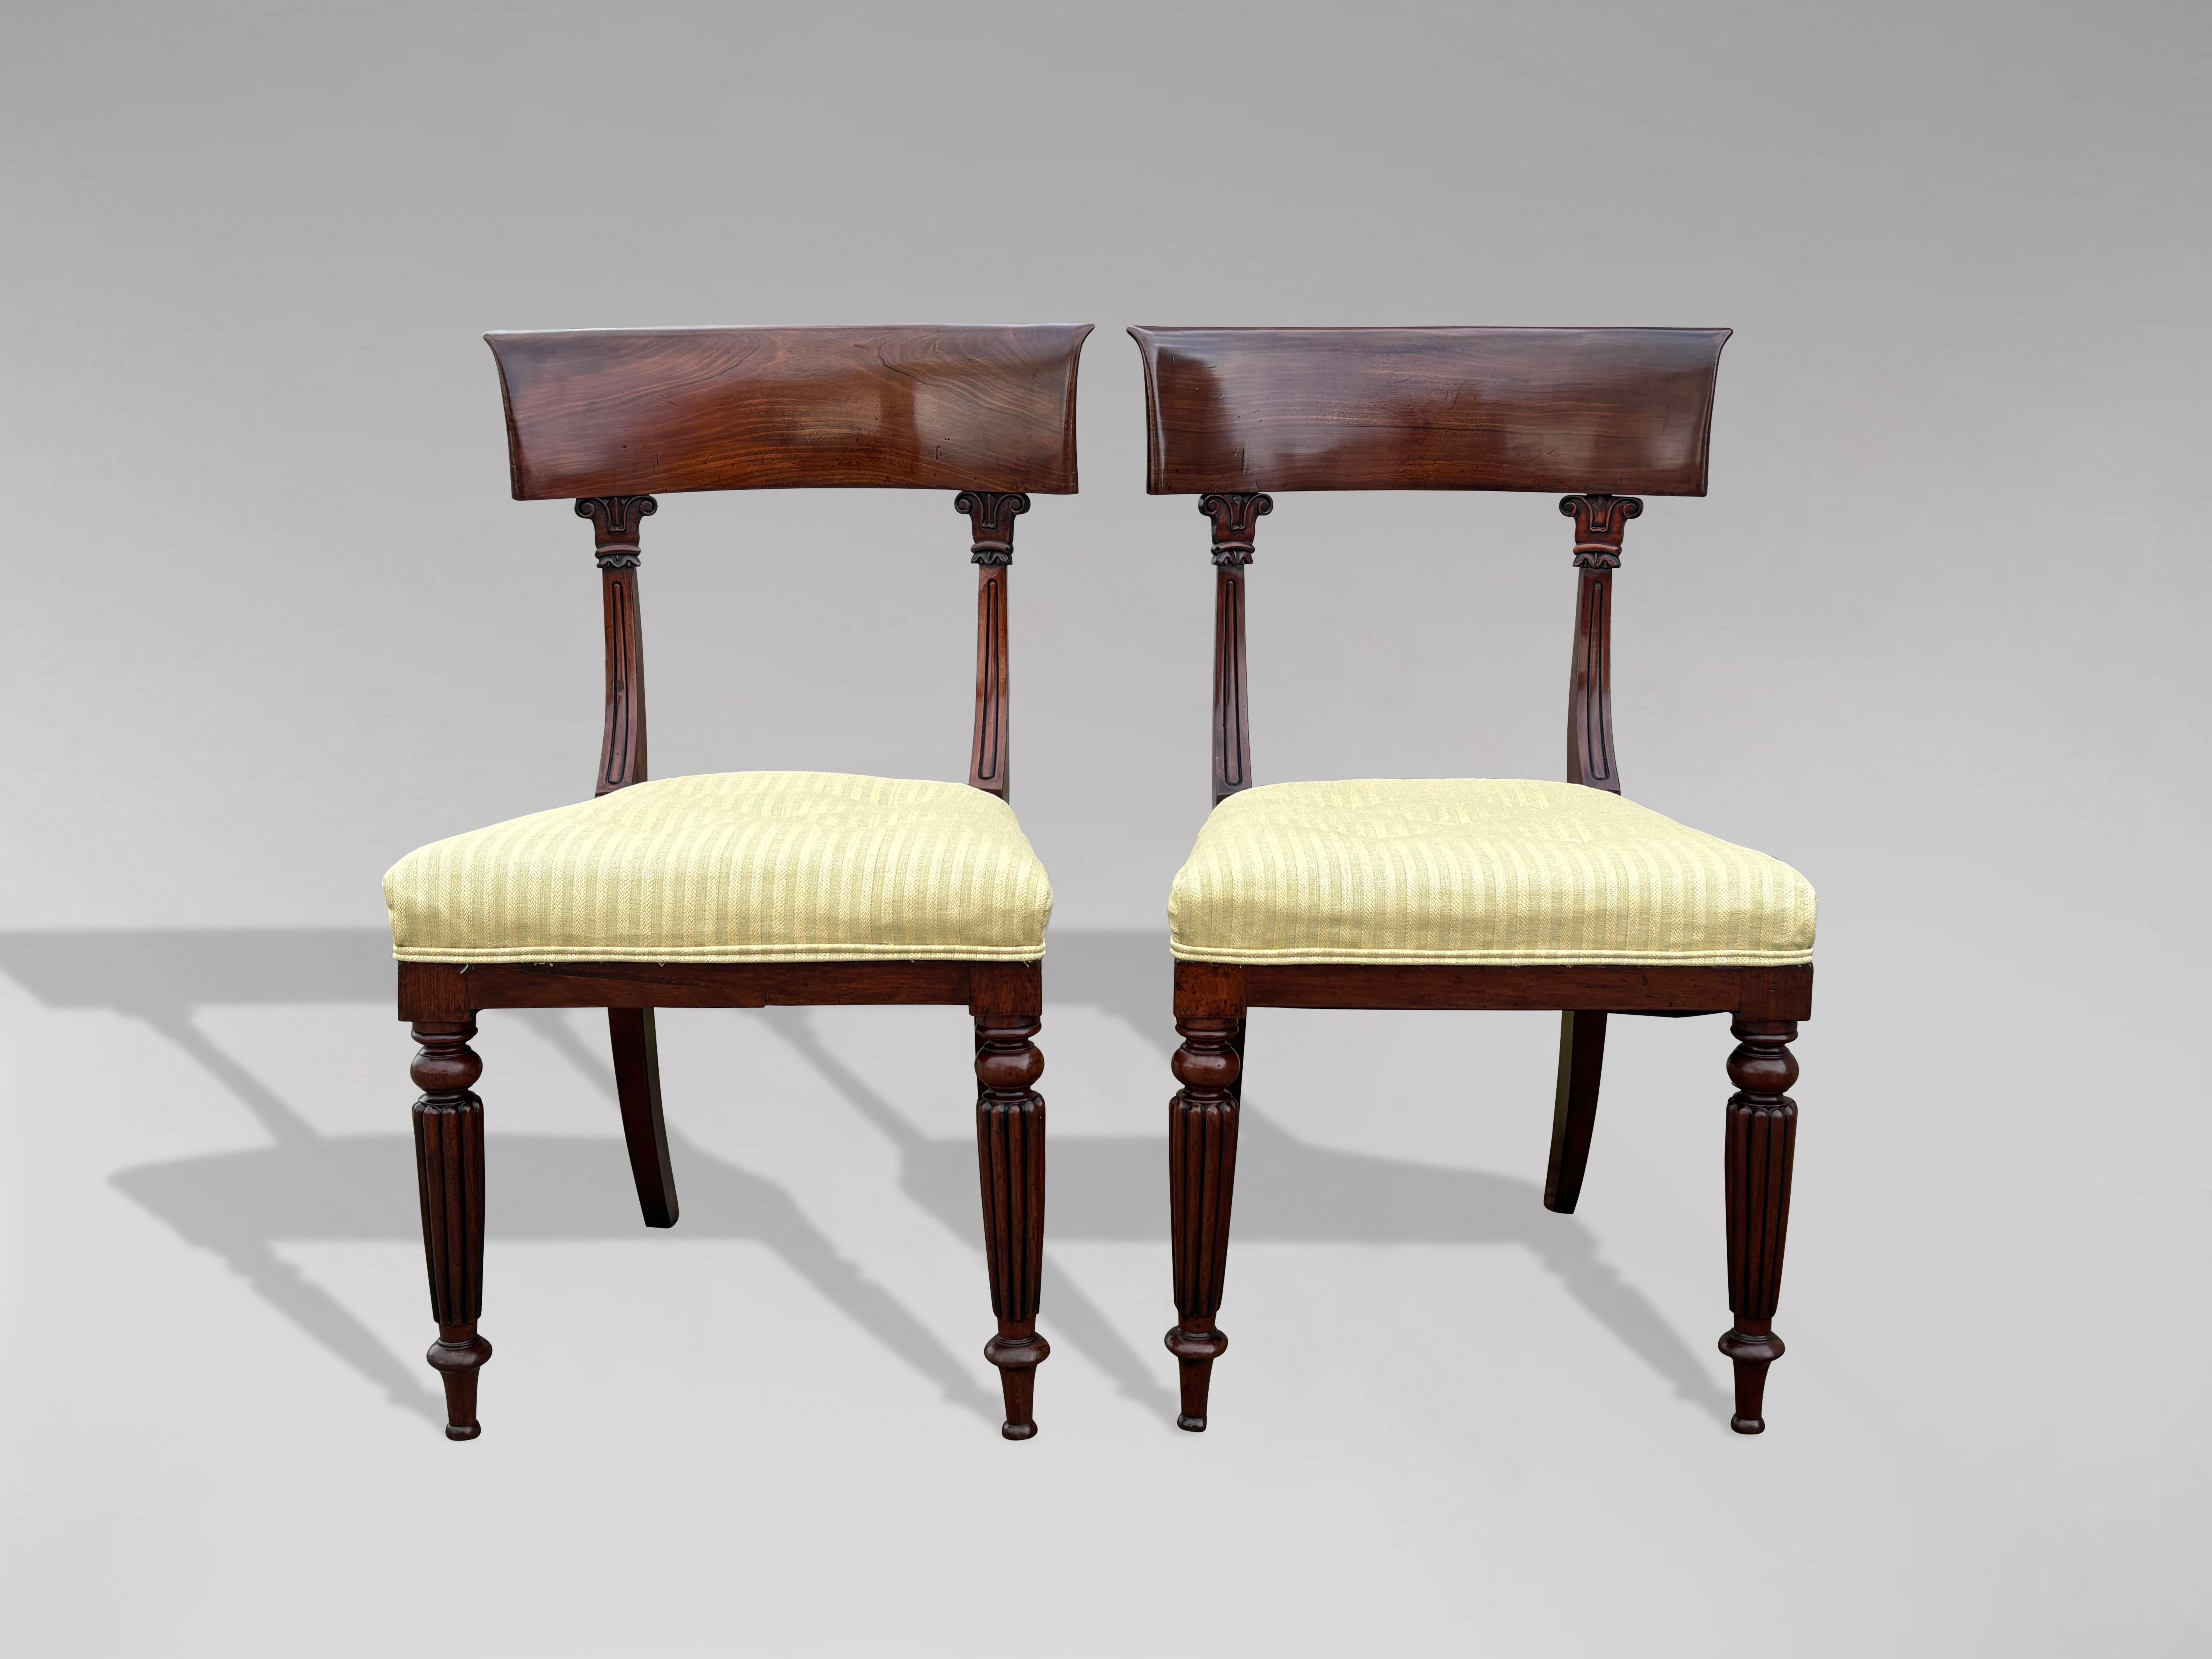 Ein Paar von 19. Jahrhundert William IV Zeitraum feine Qualität massivem Mahagoni Bar zurück Seite Stühle mit neu gepolsterten Sitzen, in ausgezeichnetem Zustand. Diese robusten Stühle sind mit einer attraktiven geschwungenen Rückenlehne